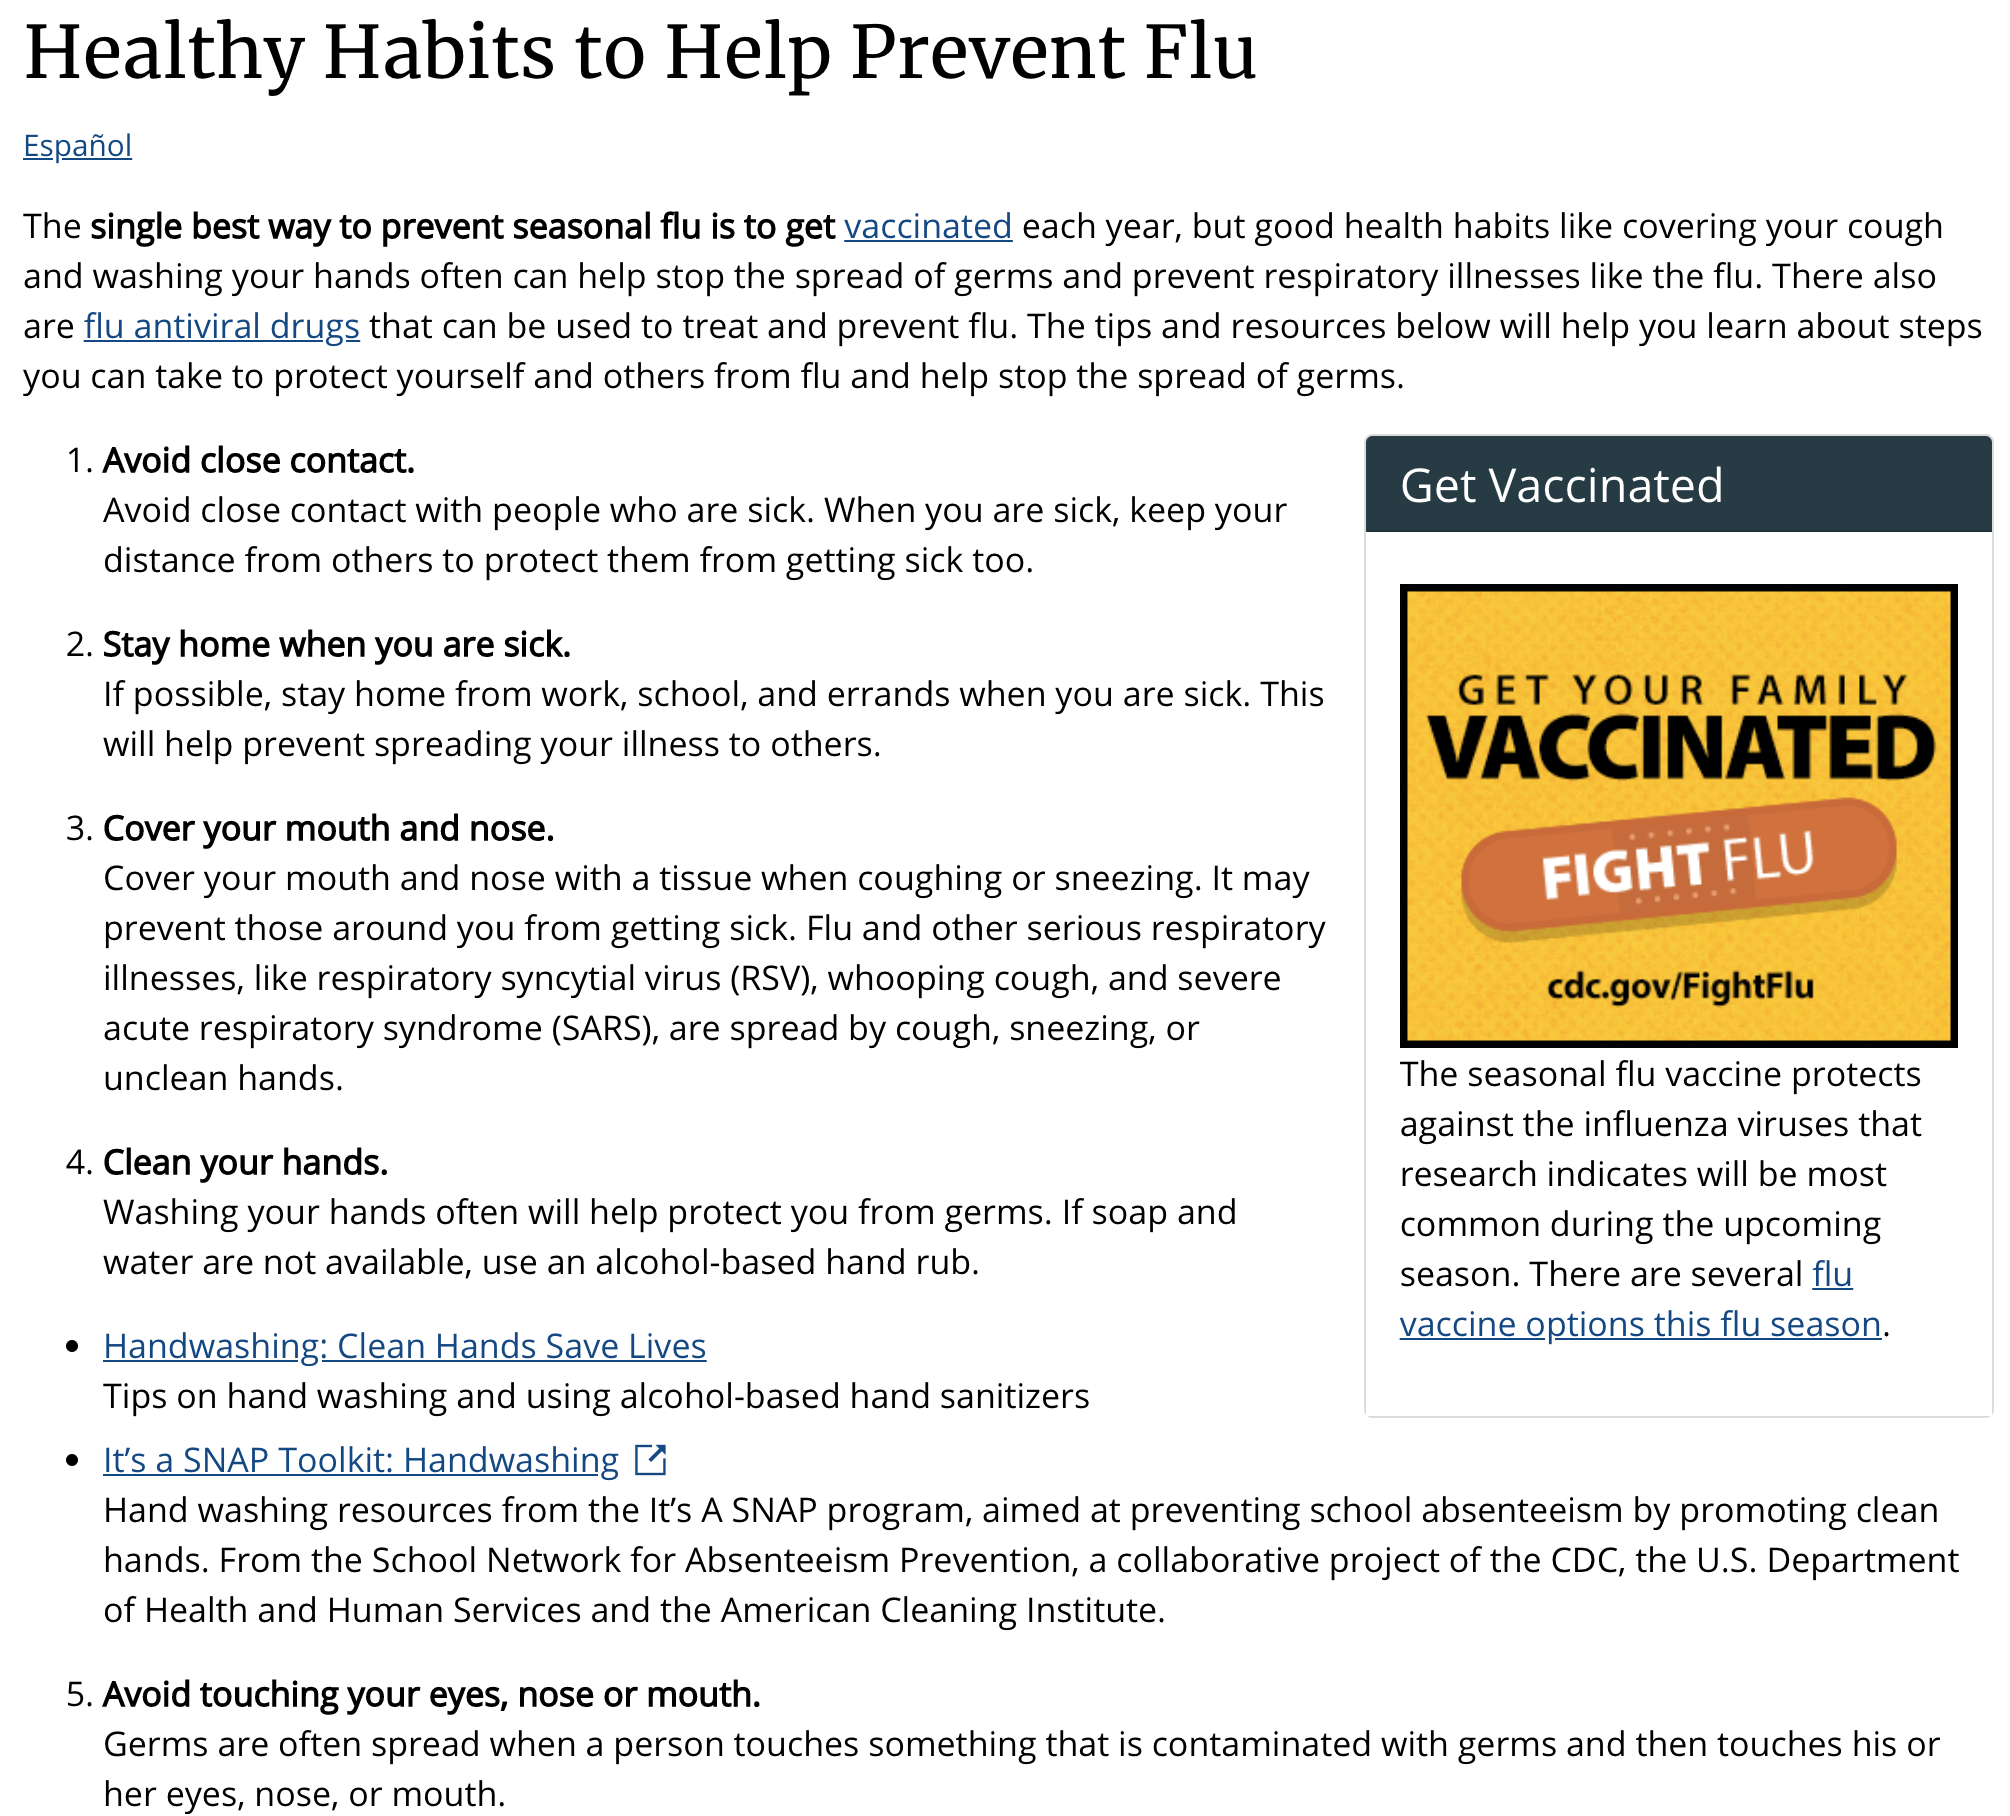 Prevent the flu